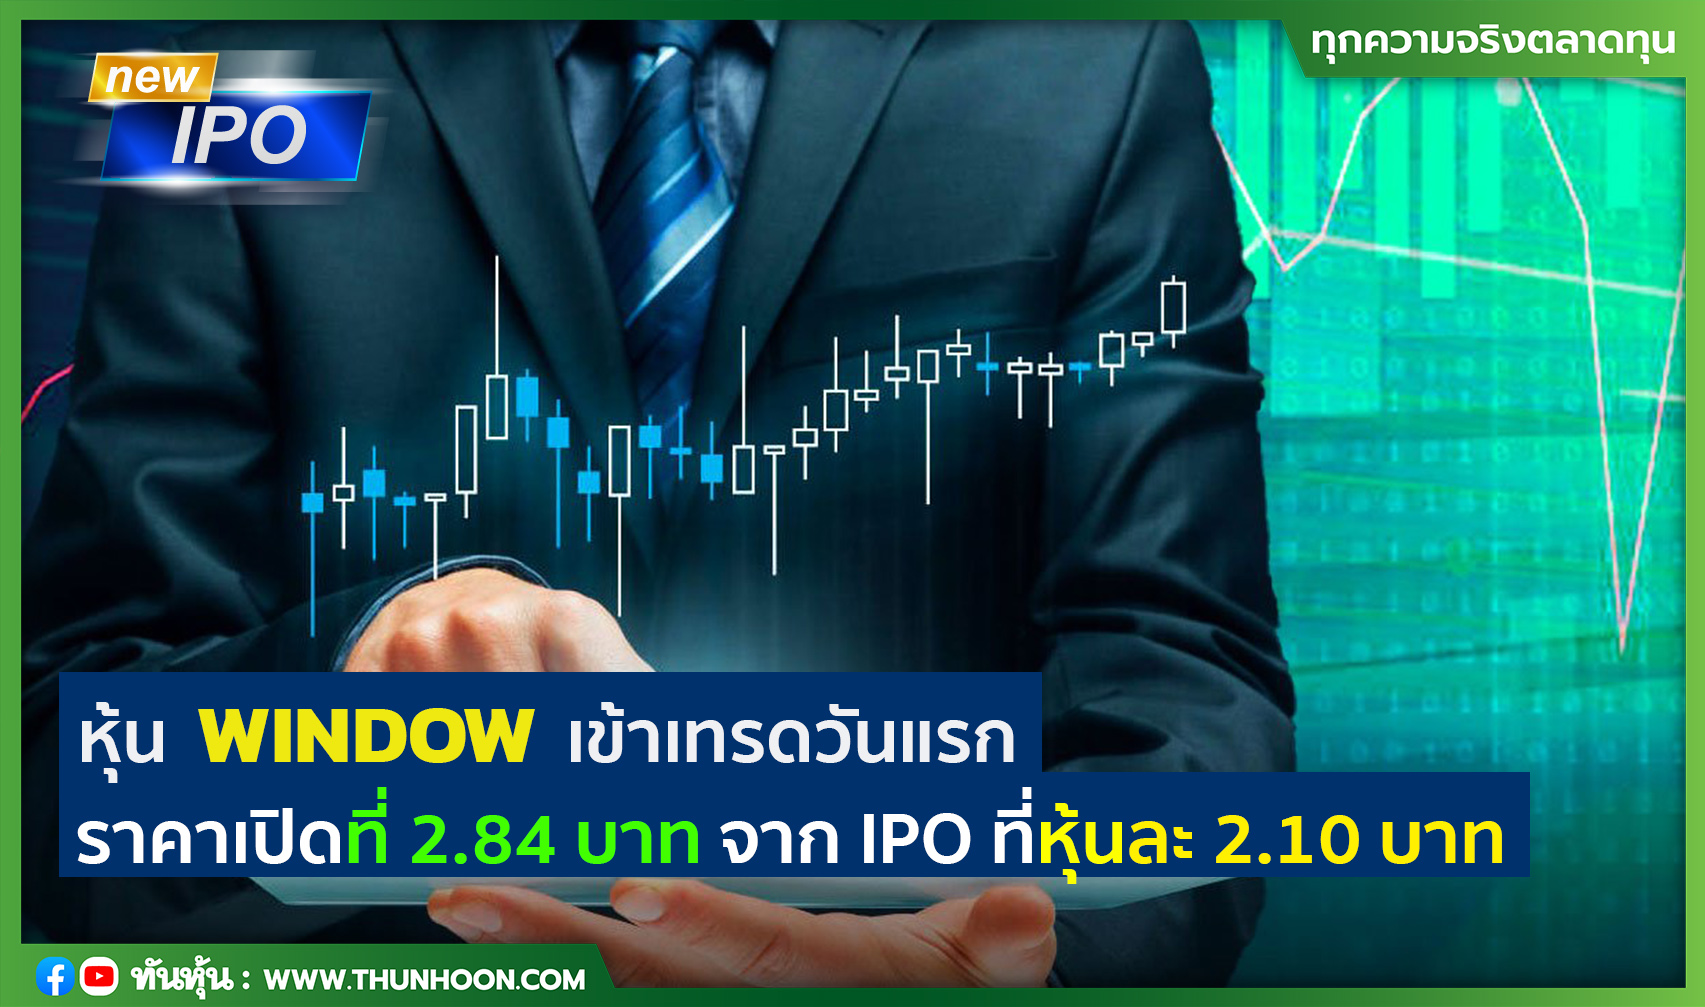 หุ้น WINDOW เข้าเทรดวันแรก ราคาเปิดที่ 2.84 บาท เพิ่มขึ้น 35.24% จาก IPO